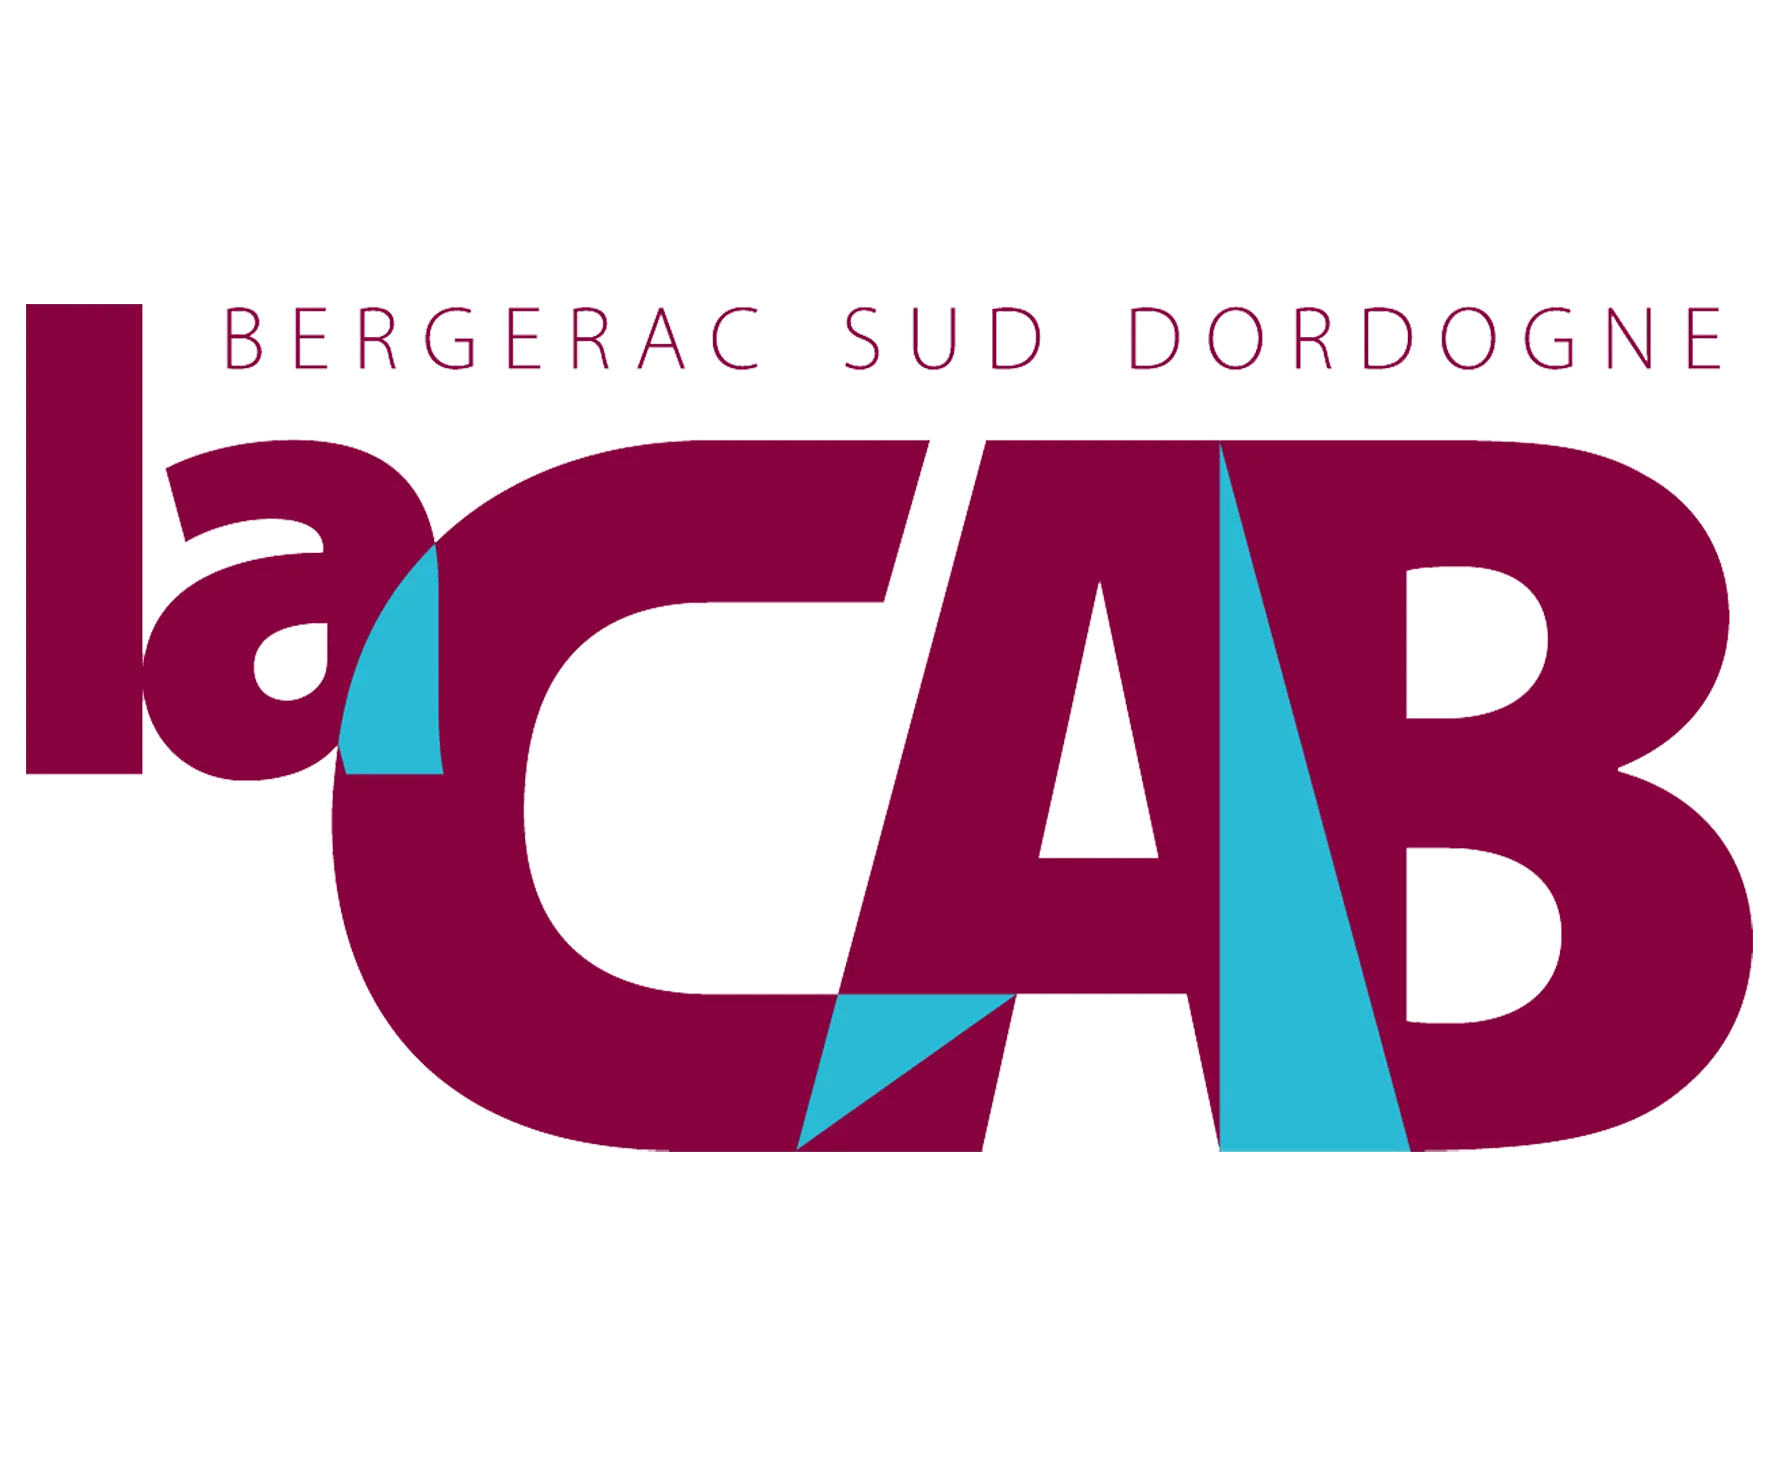 La CAB logo